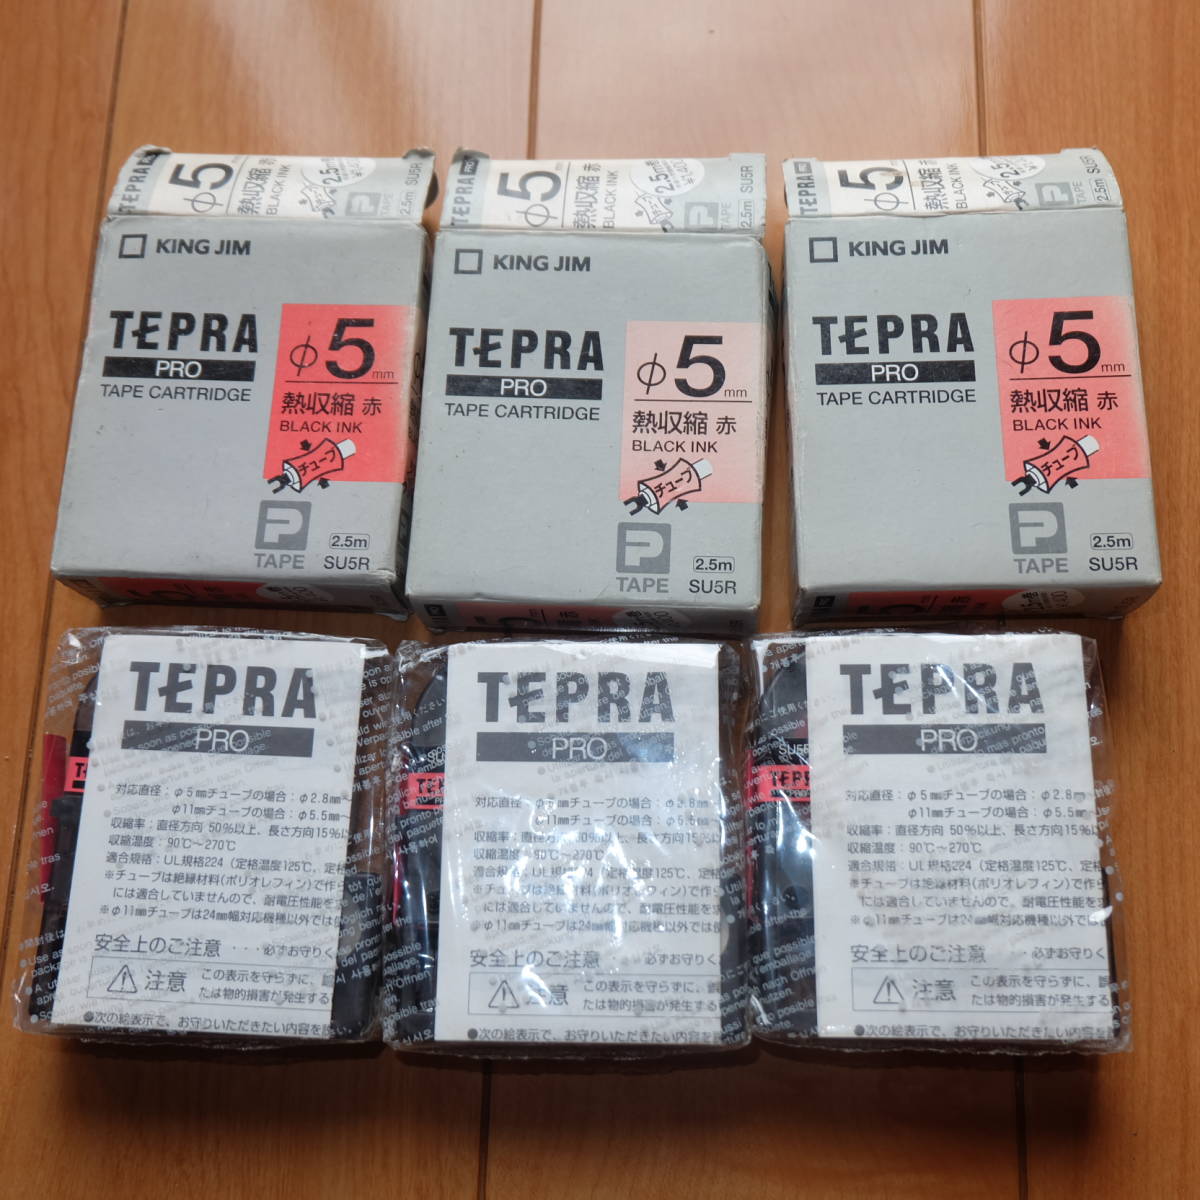 【68%OFF!】 当店在庫してます 新品 3個セット KING JIM キングジム TEPRA PRO テプラプロ 熱収縮チューブ 直径5mm 赤 黒インク テープカートリッジ 2.5m SU5R publiks.de publiks.de